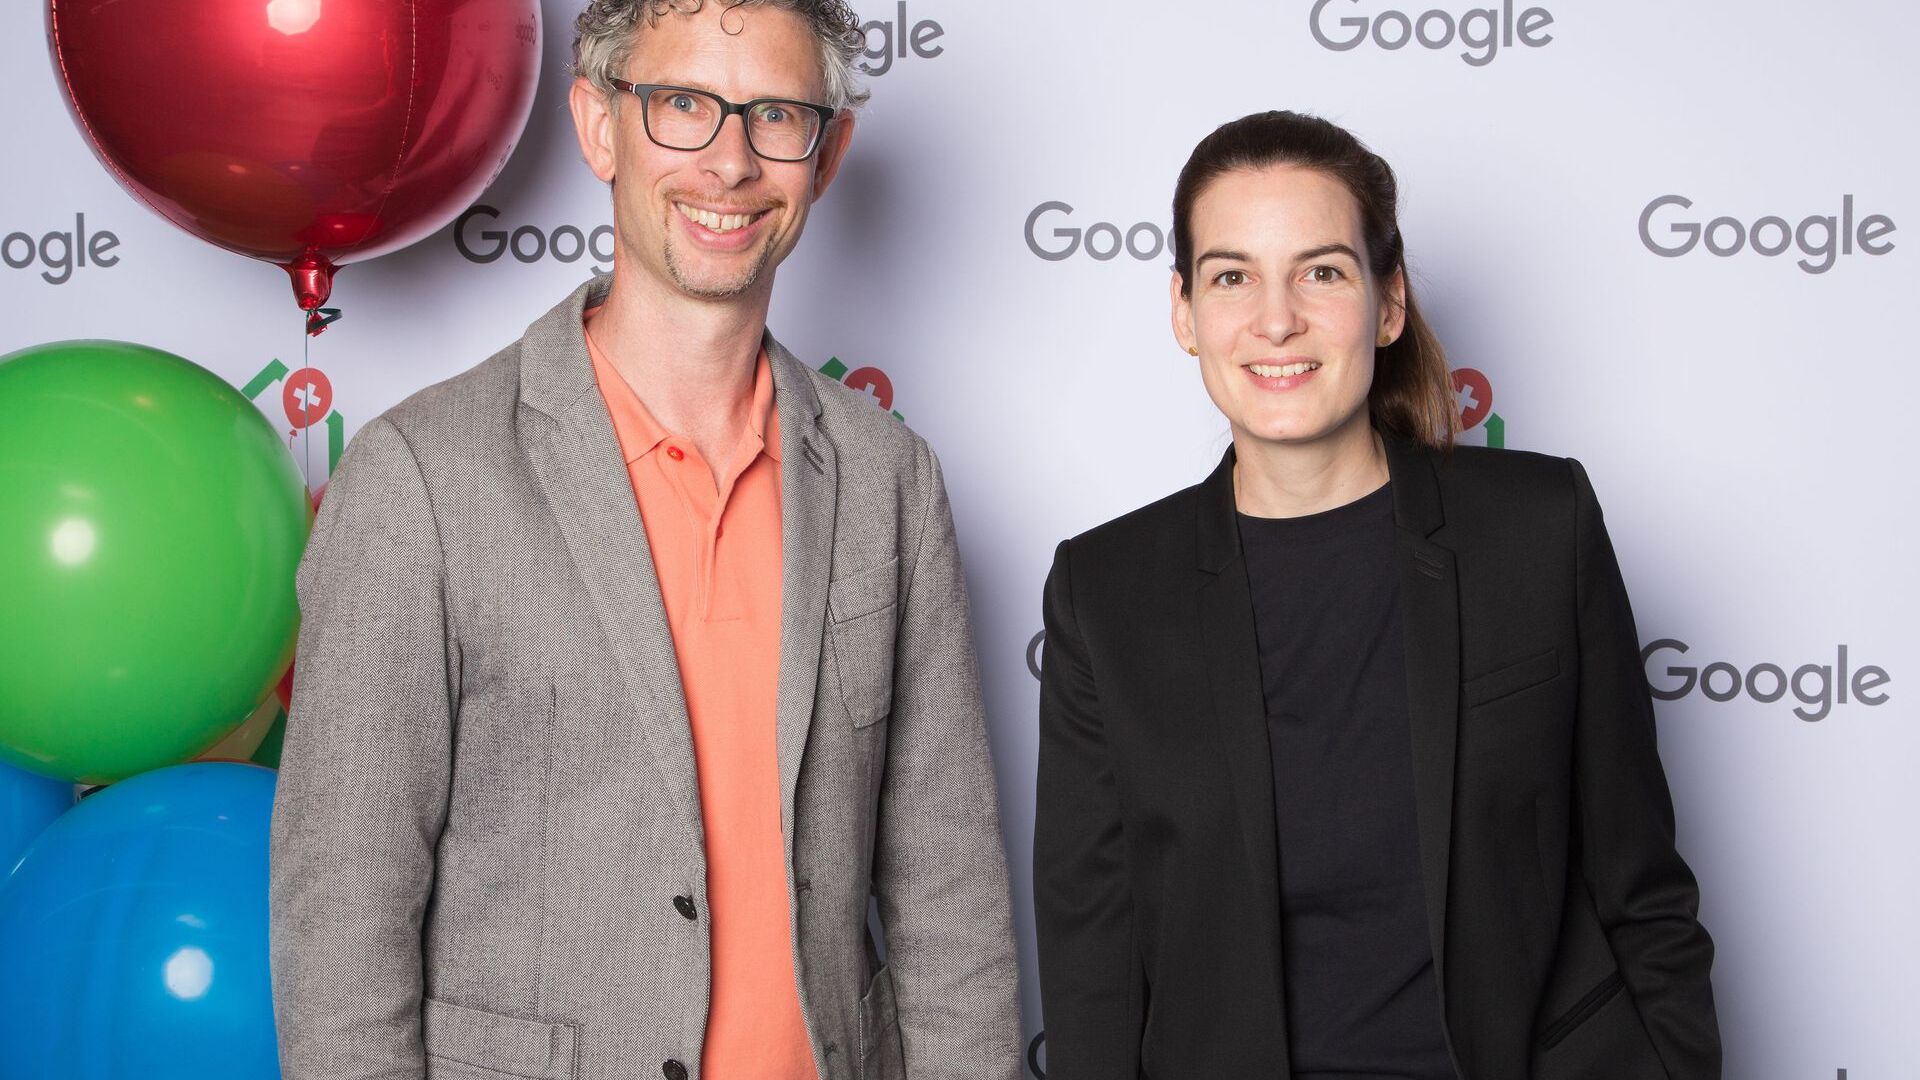 Samuel Leiser e Pia De Carli, media team Google Switzerland, hanno presenziato il 27 giugno 2022 all'inaugurazione ufficiale del nuovo Campus Europaallee di Google a Zurigo